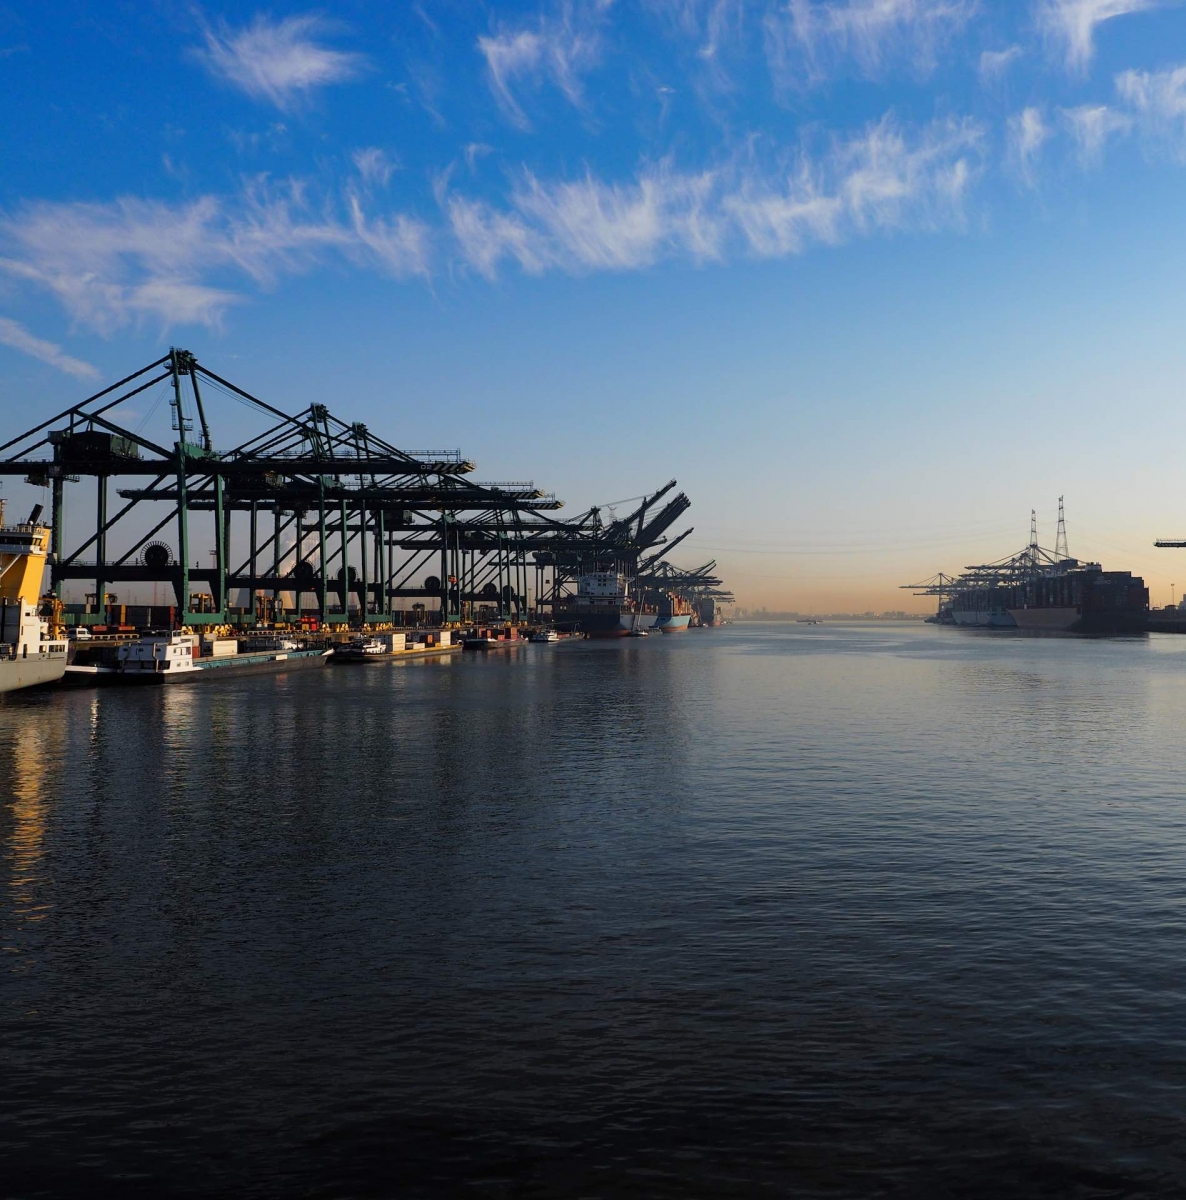 Grues portuaires déchargeant des conteneurs de navires par une matinée ensoleillée dans le port d'Anvers.